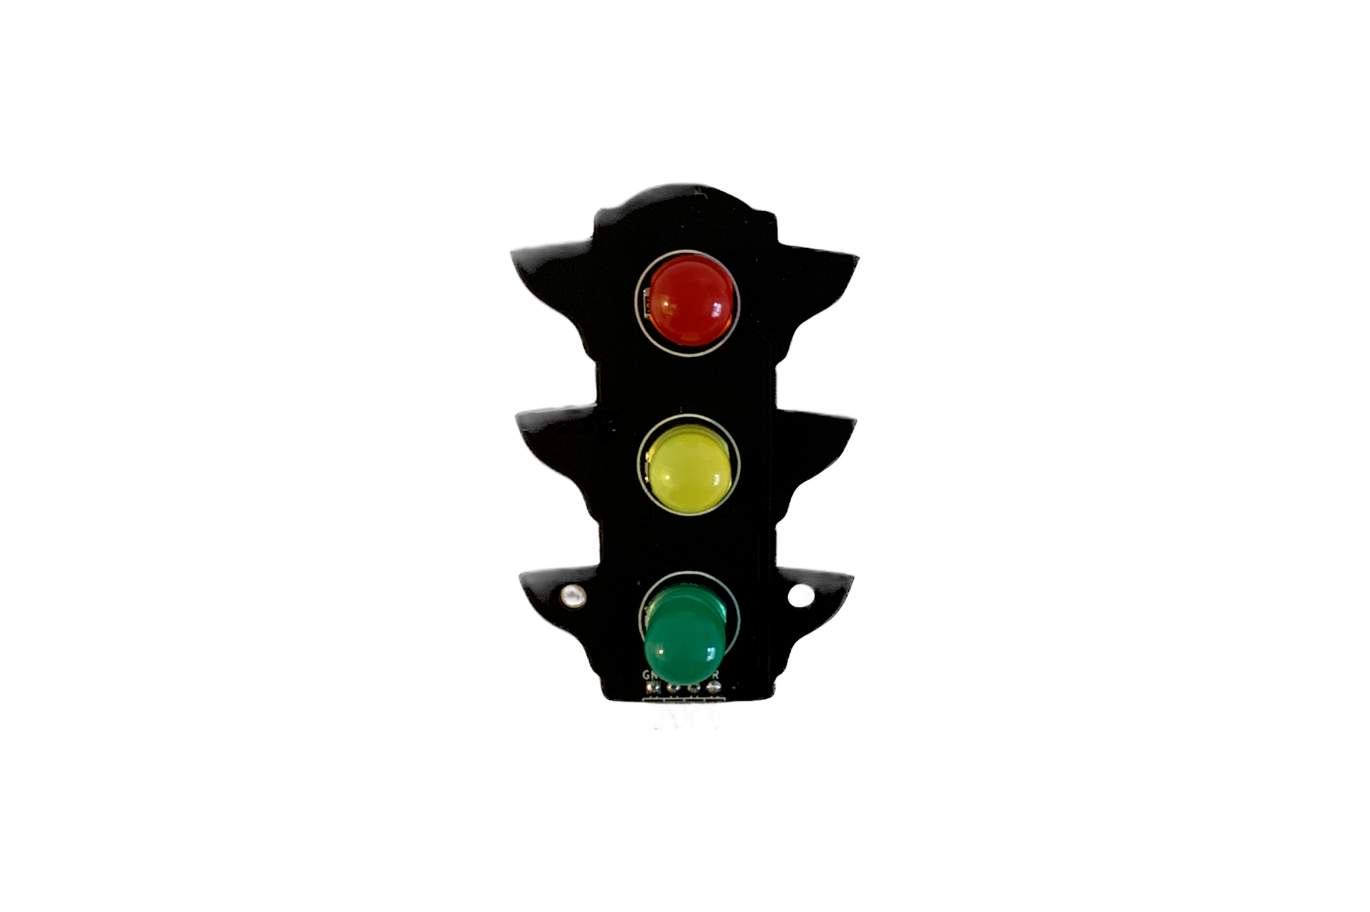 Traffic Light Module by Bits4Bots